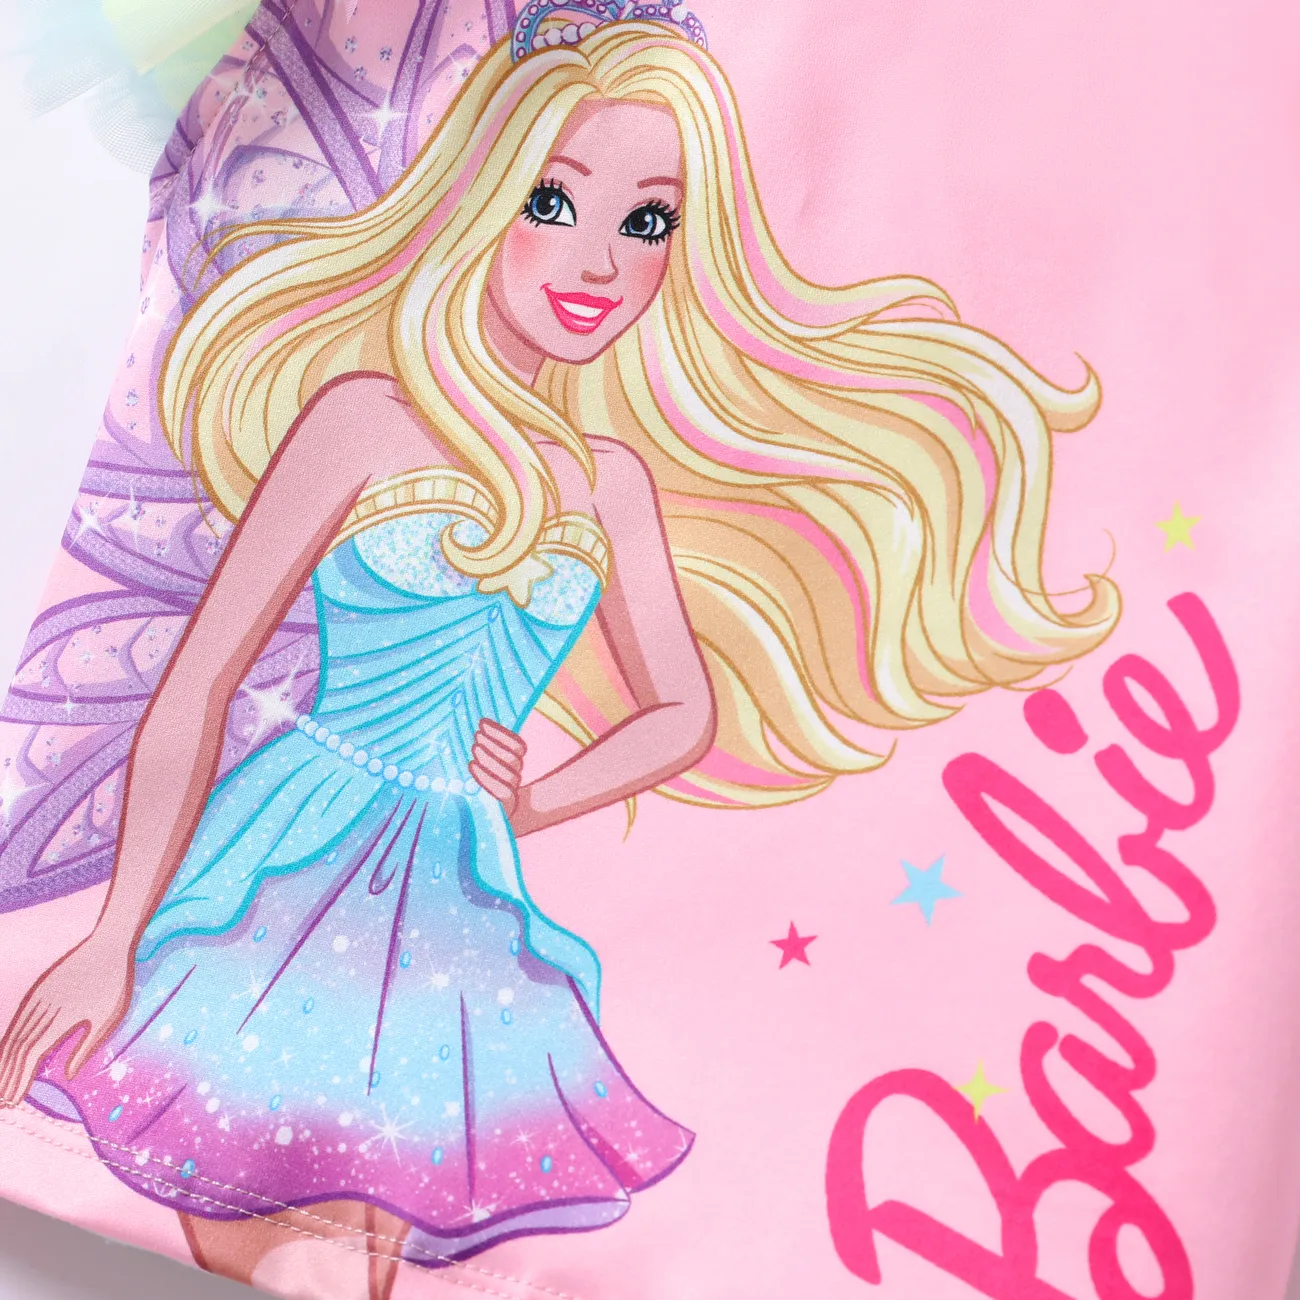 Barbie Niño pequeño Chica Volantes Infantil Manga corta Camiseta Rosado big image 1